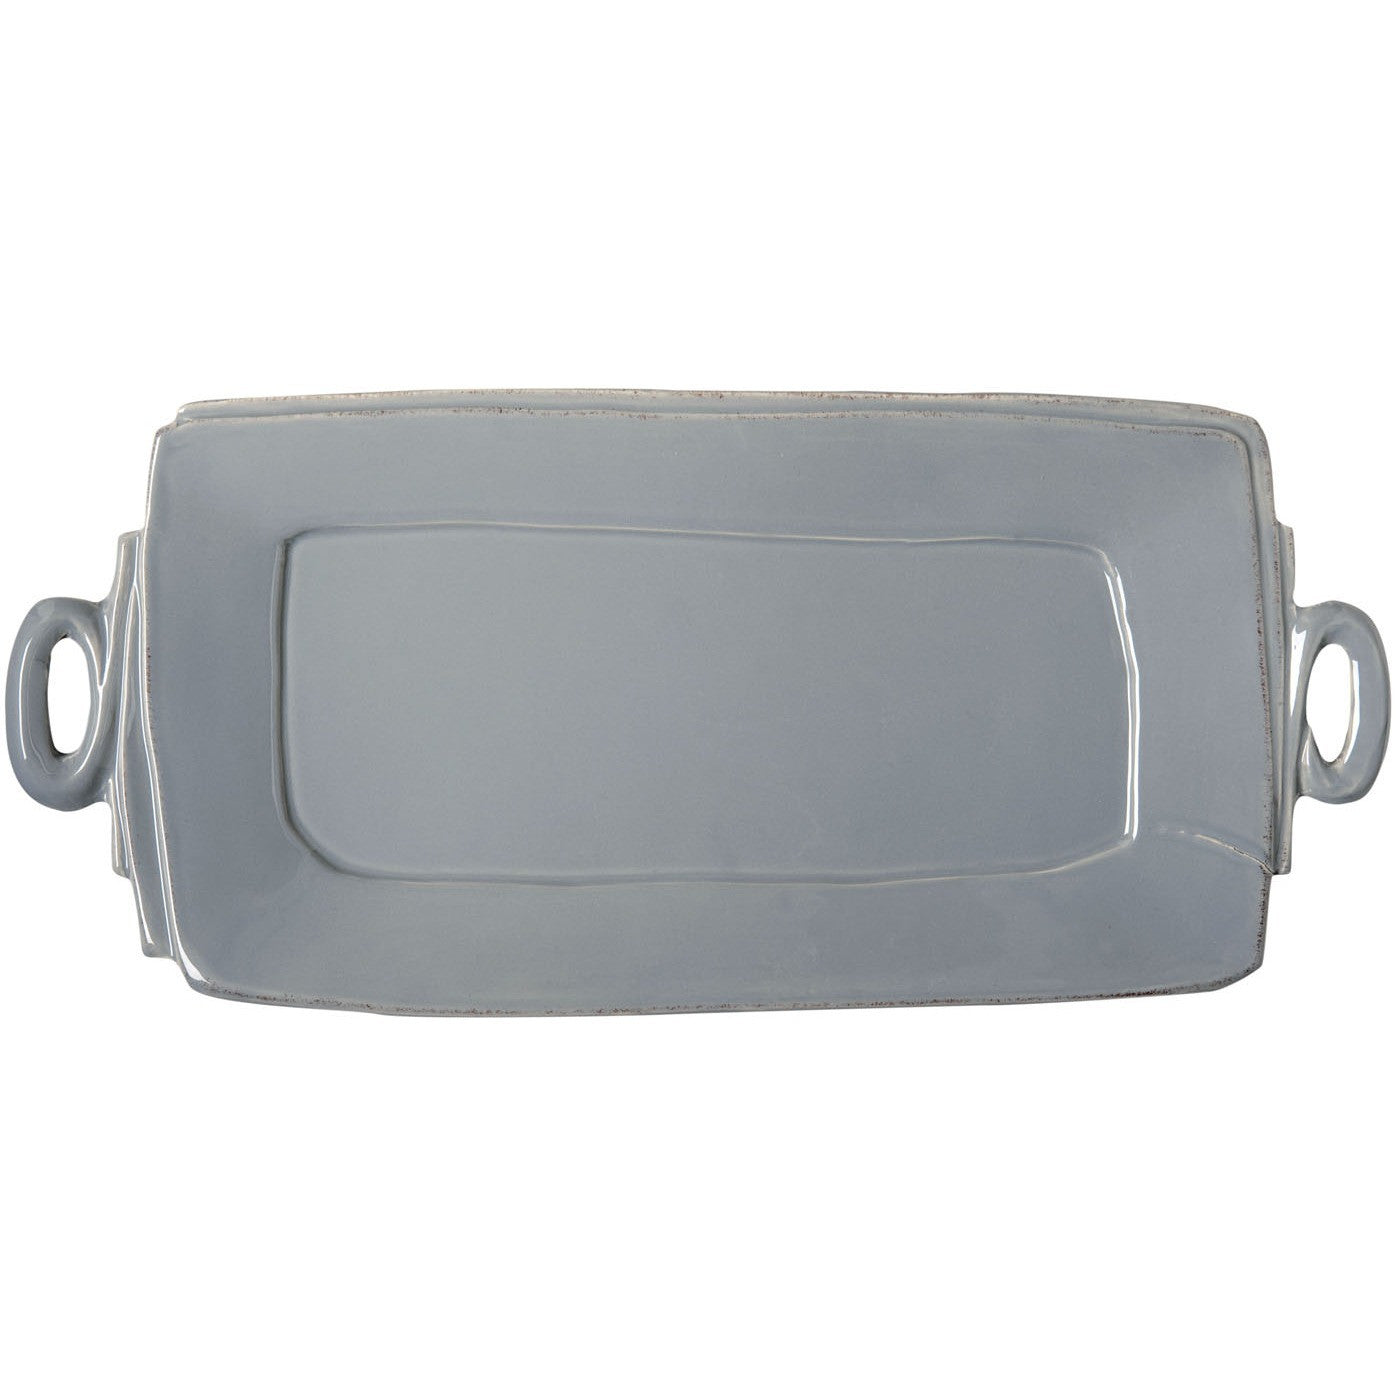 VIETRI: Lastra Gray Handled Rectangular Platter - Artistica.com